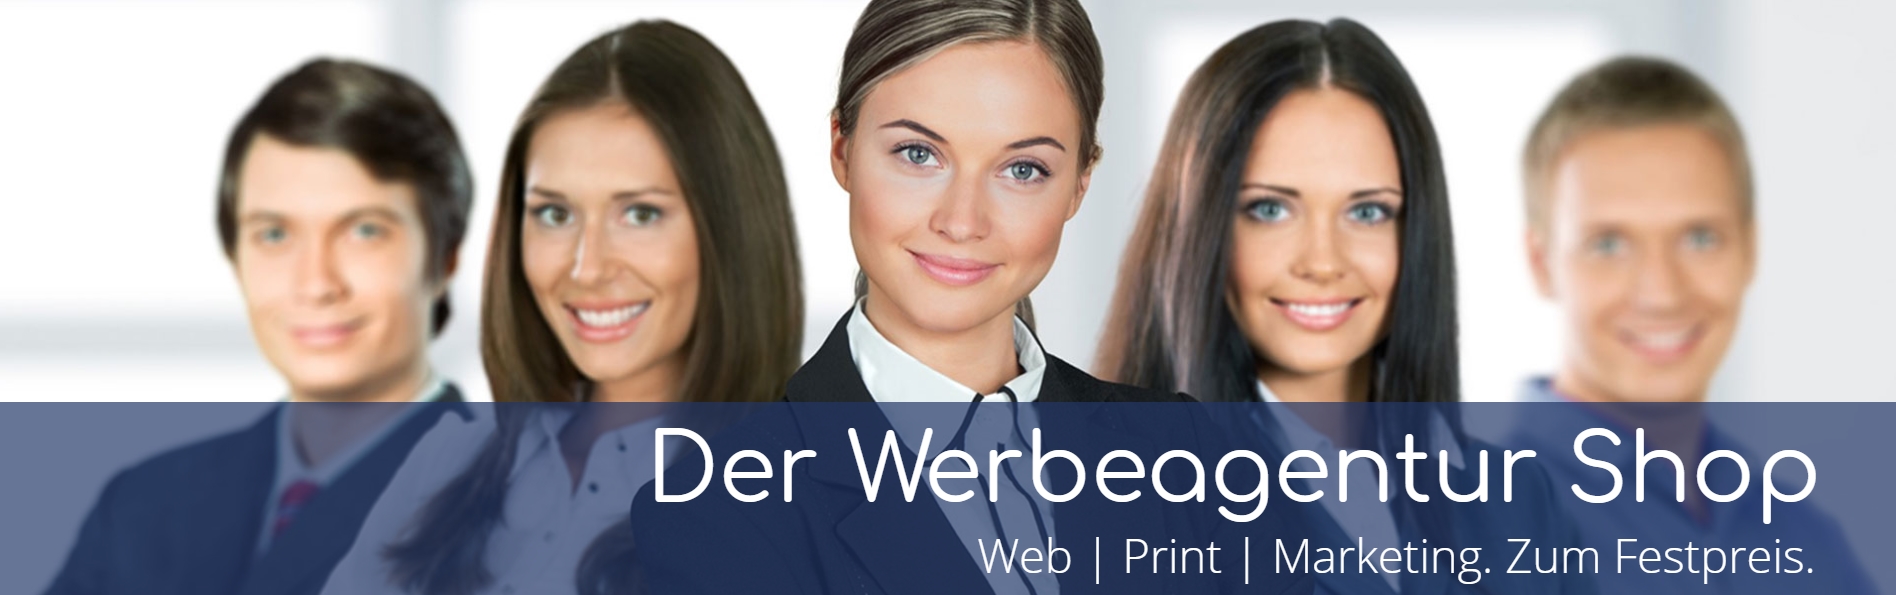 Werbeagentur Shop webundprint24